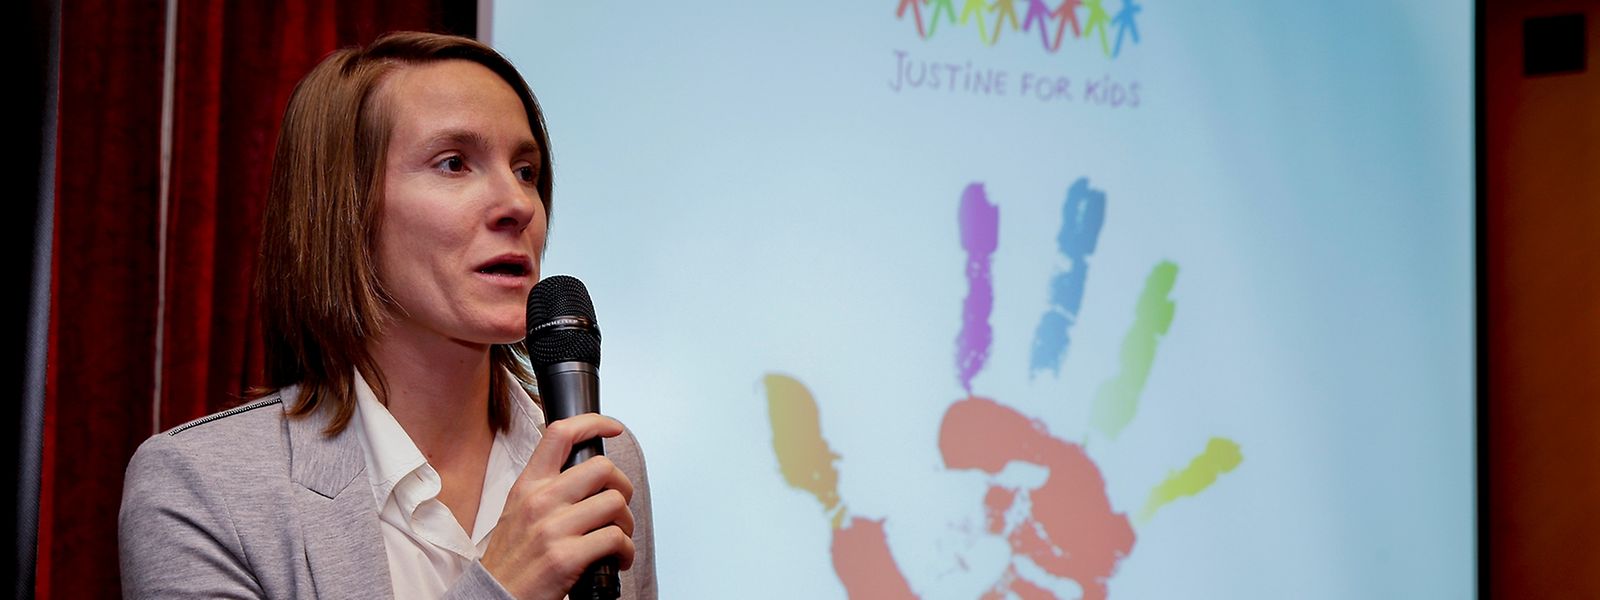 Justine Henin stellte ihre Stiftung "Justine for Kids" vor.